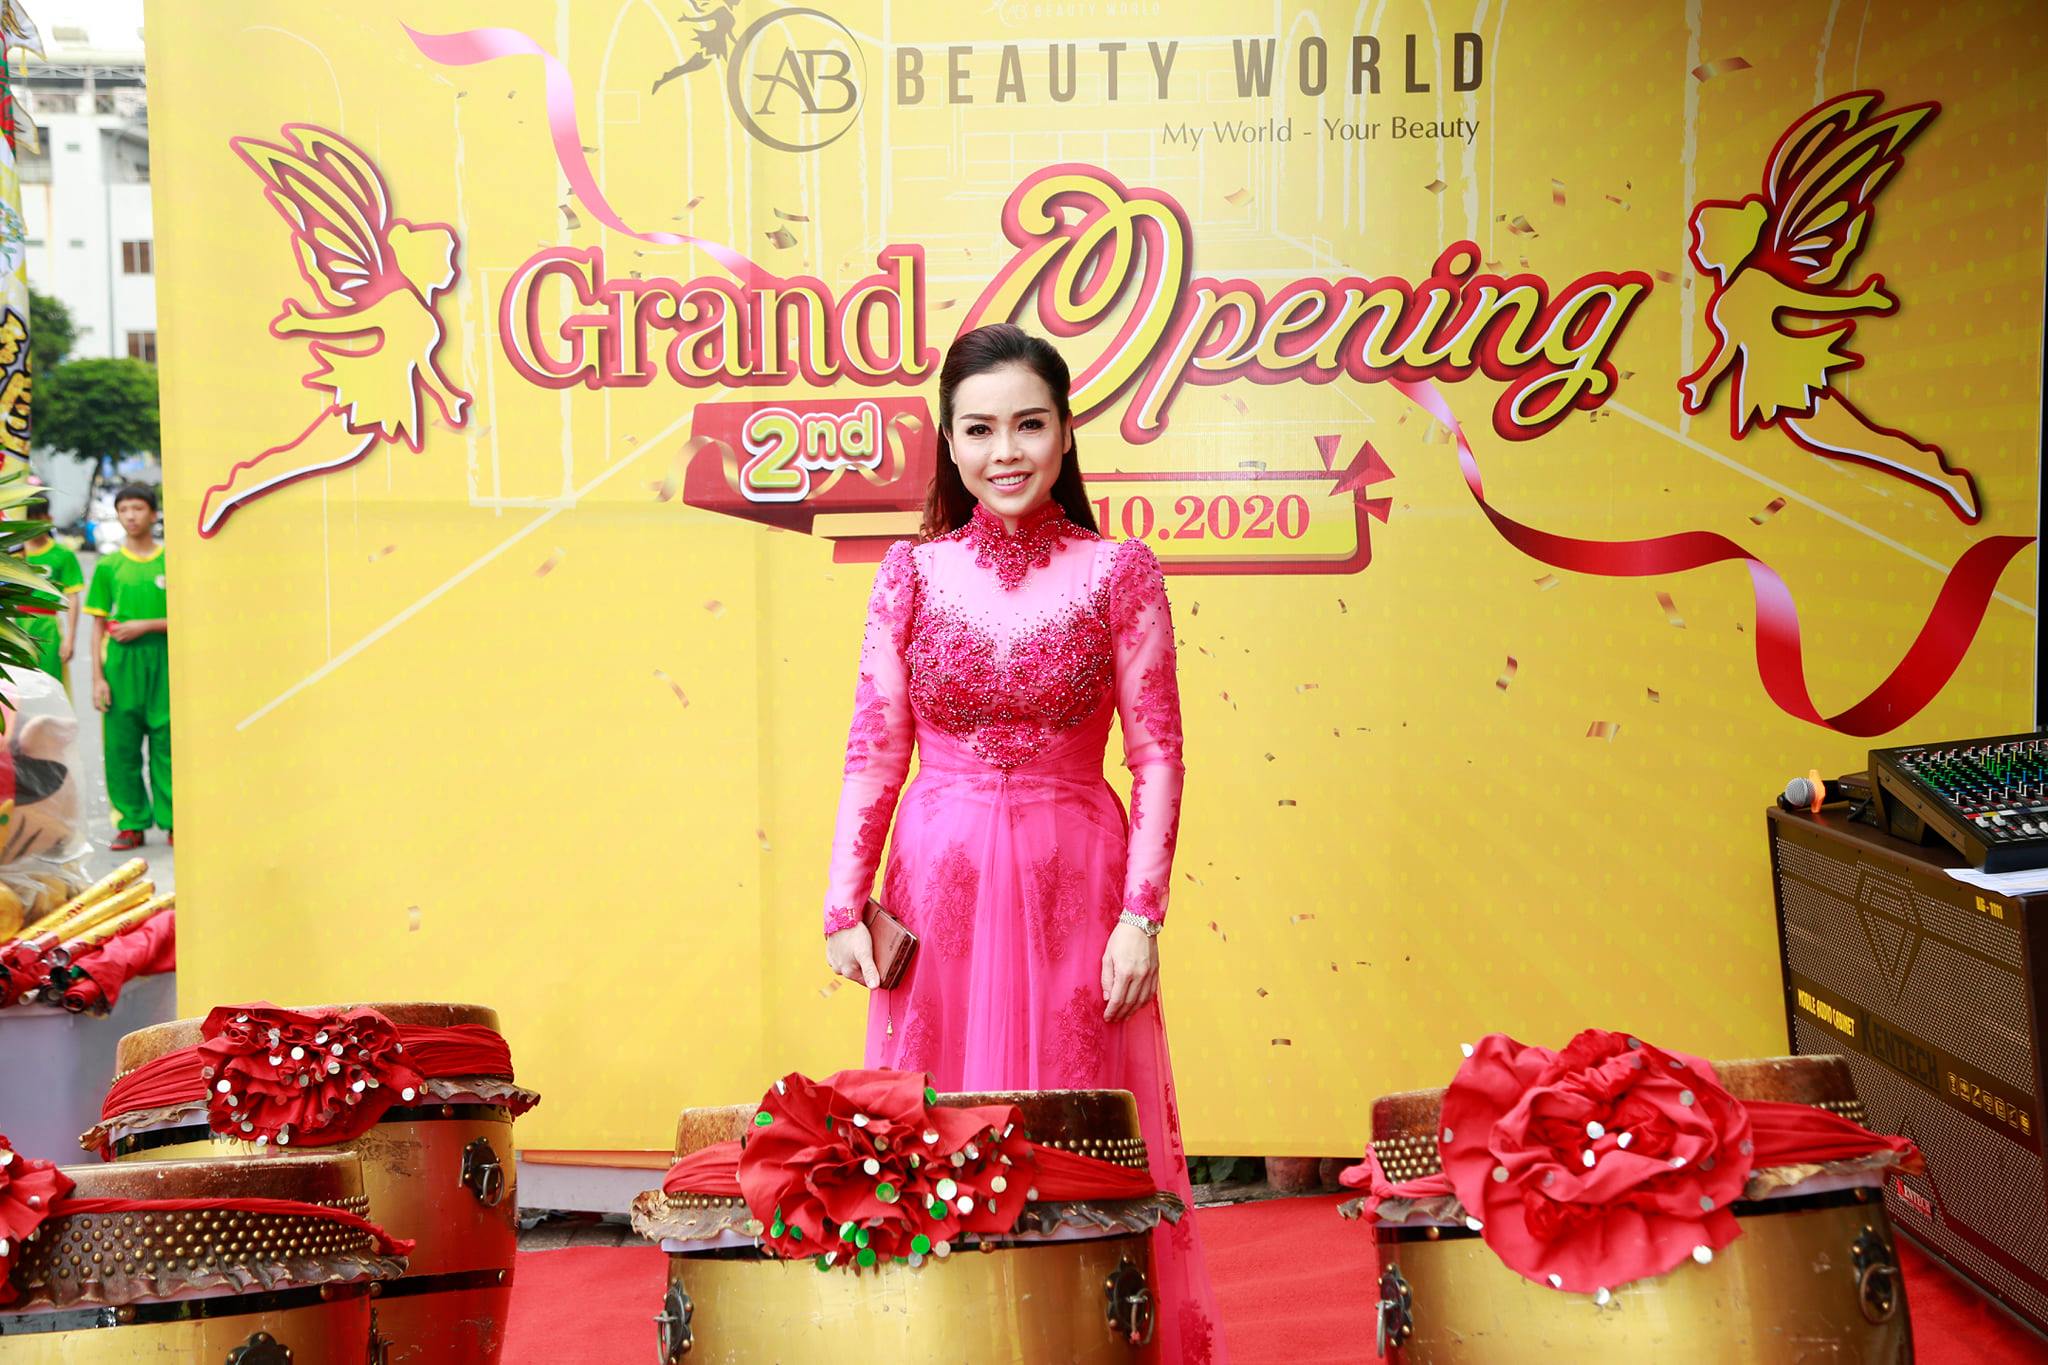 AB Beauty World kỳ vọng chinh phục thị trường bán lẻ mỹ phẩm